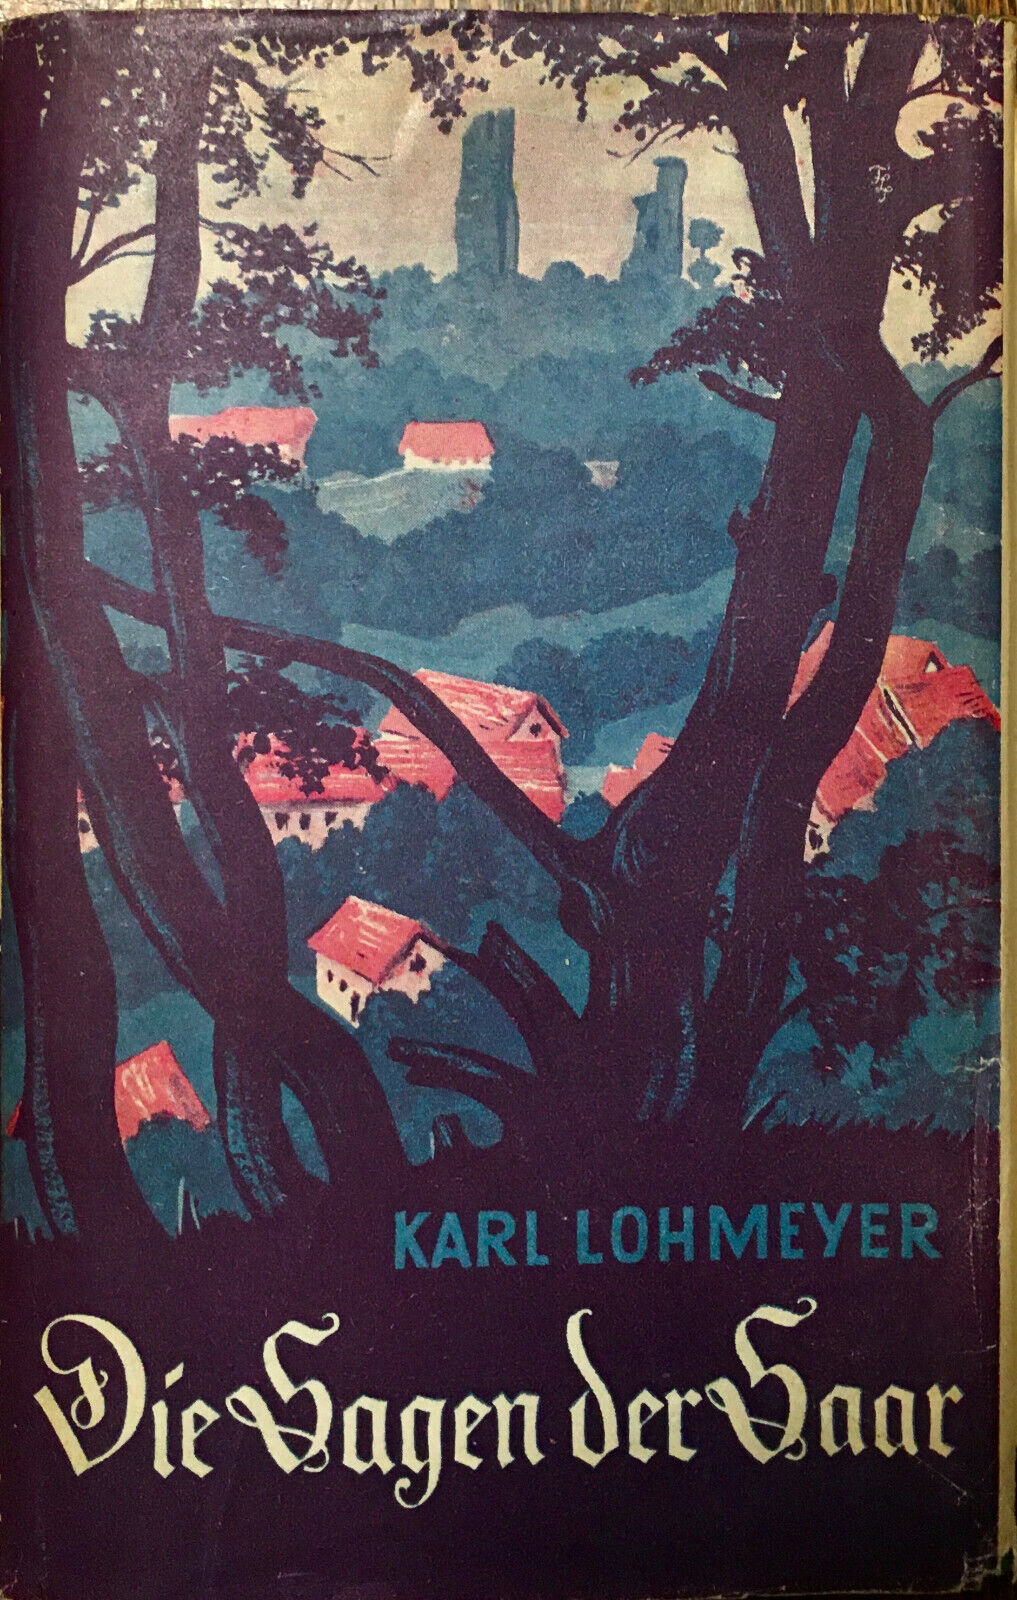 Karl Lohmeyer: DIE SAGEN DER SAAR (German language, 1978, MINERVA-VERLAG THINNES & NOLTE)